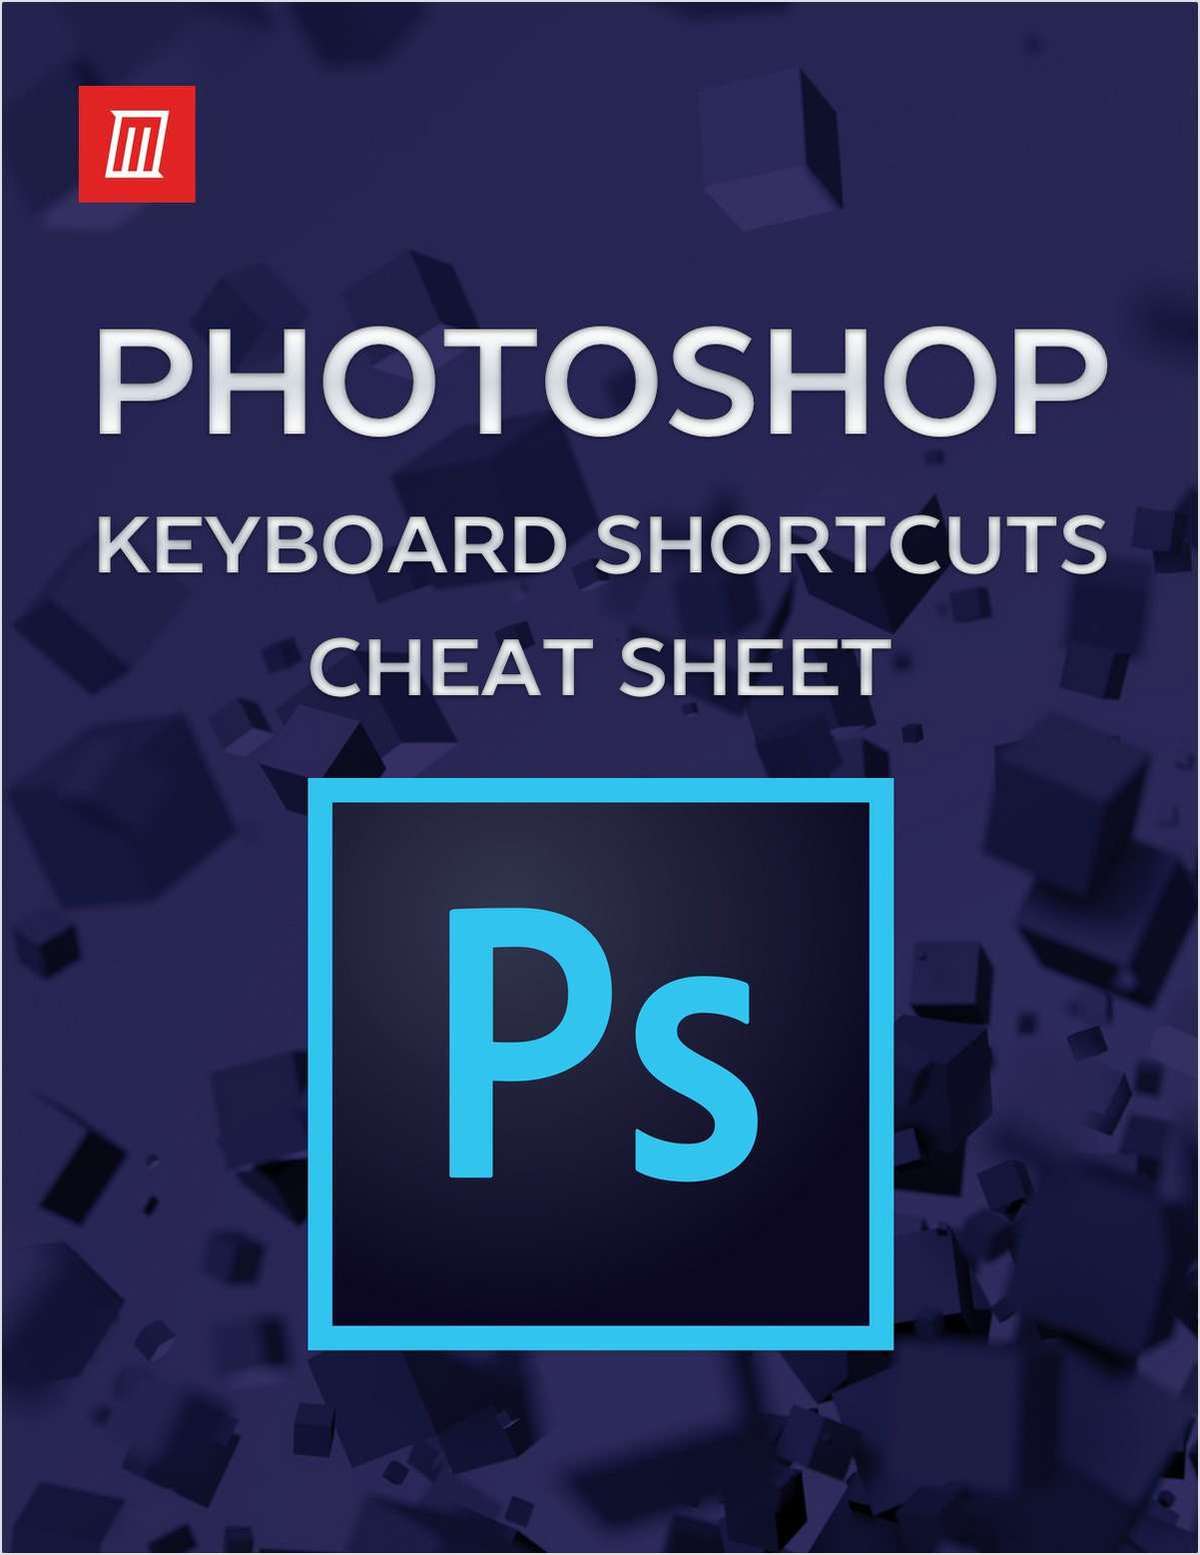 Adobe Photoshop Keyboard Shortcuts Free Cheat Sheet